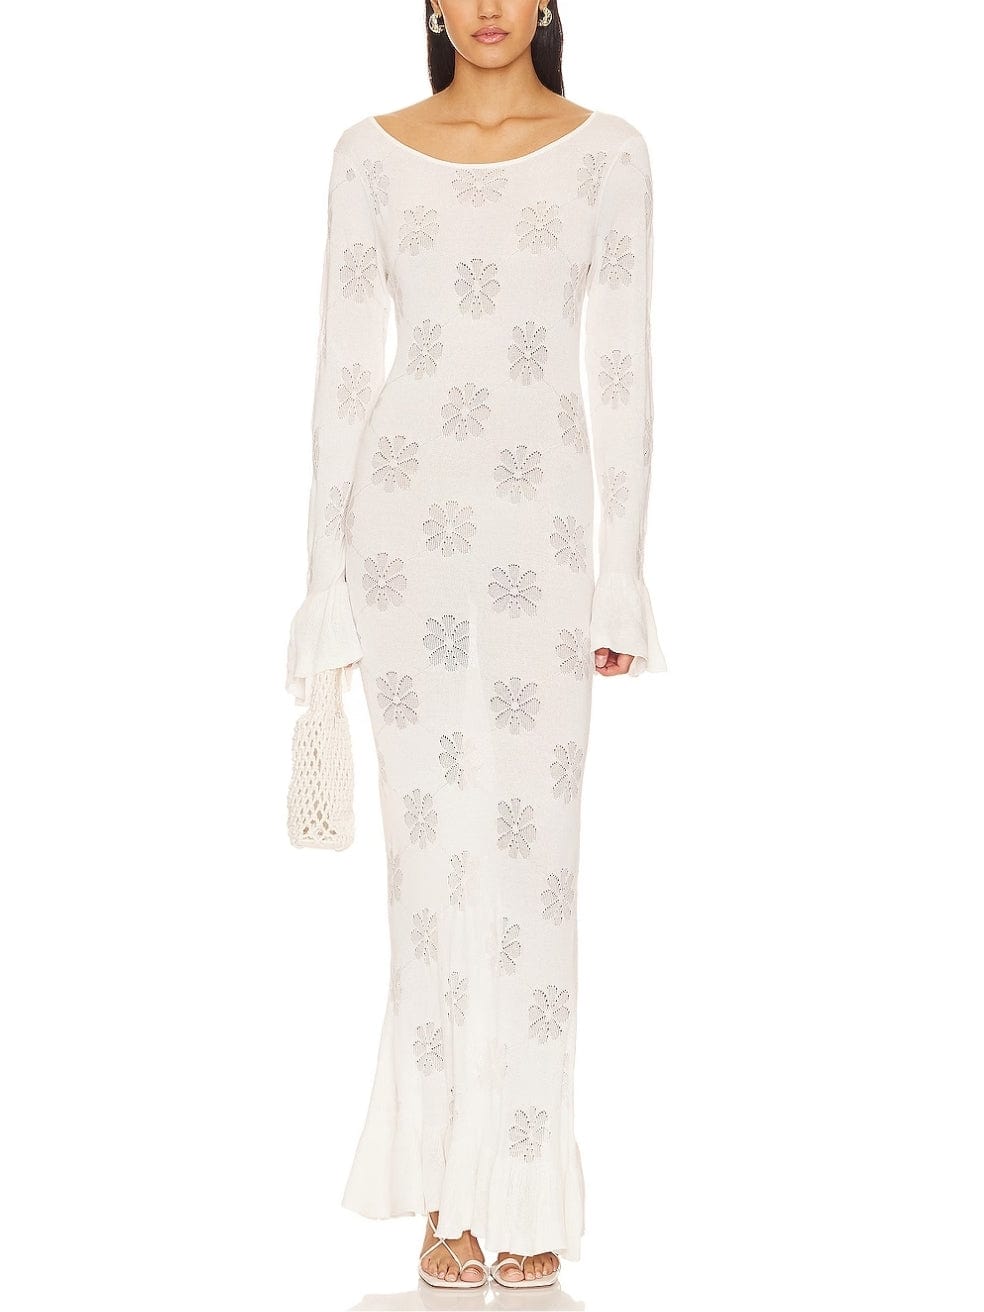 Rafaella Dress in Venetian White